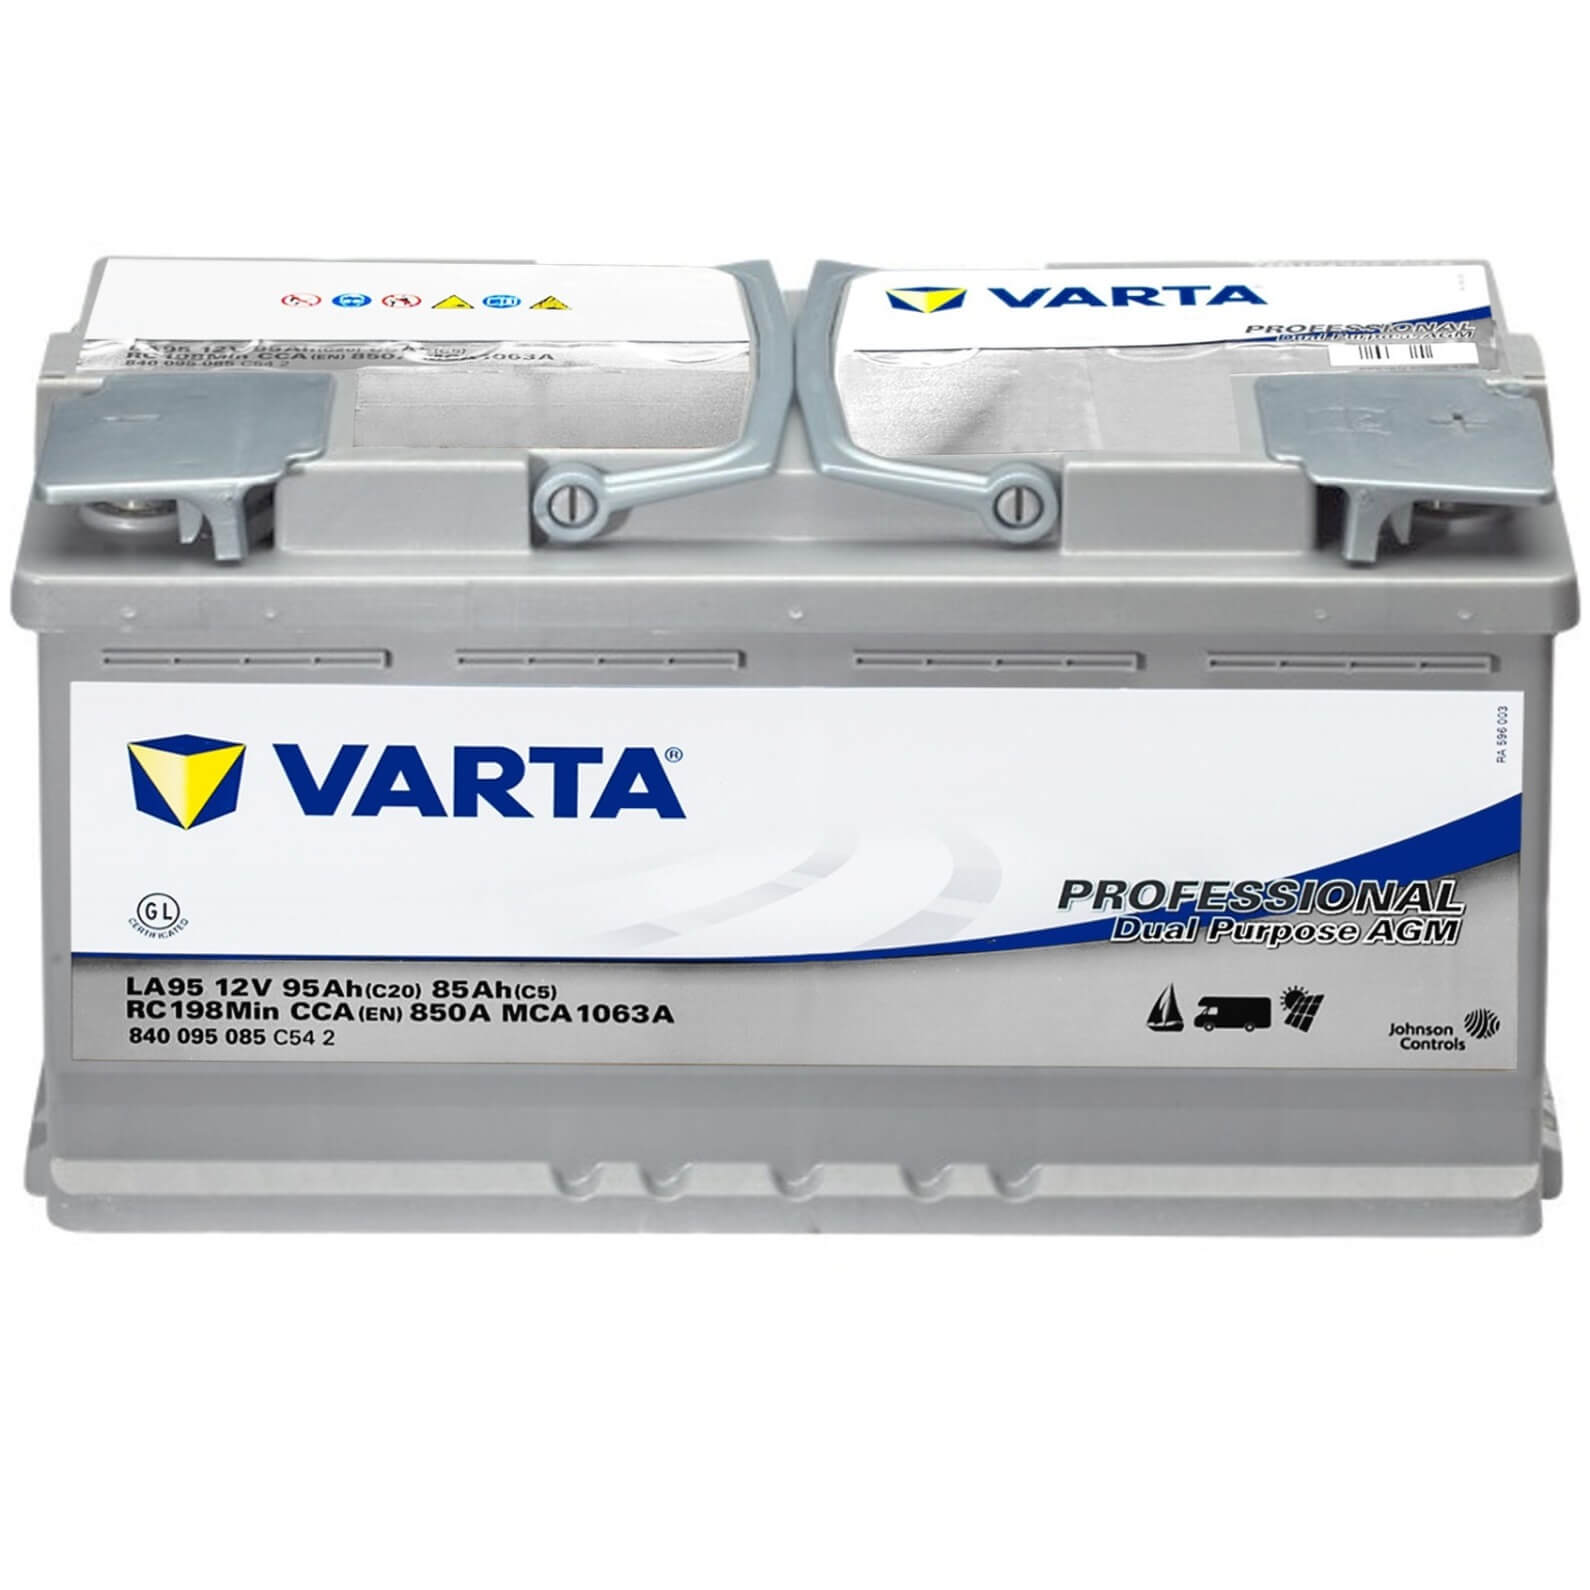 Varta LA95 Professional AGM 12V 95Ah 850A/EN